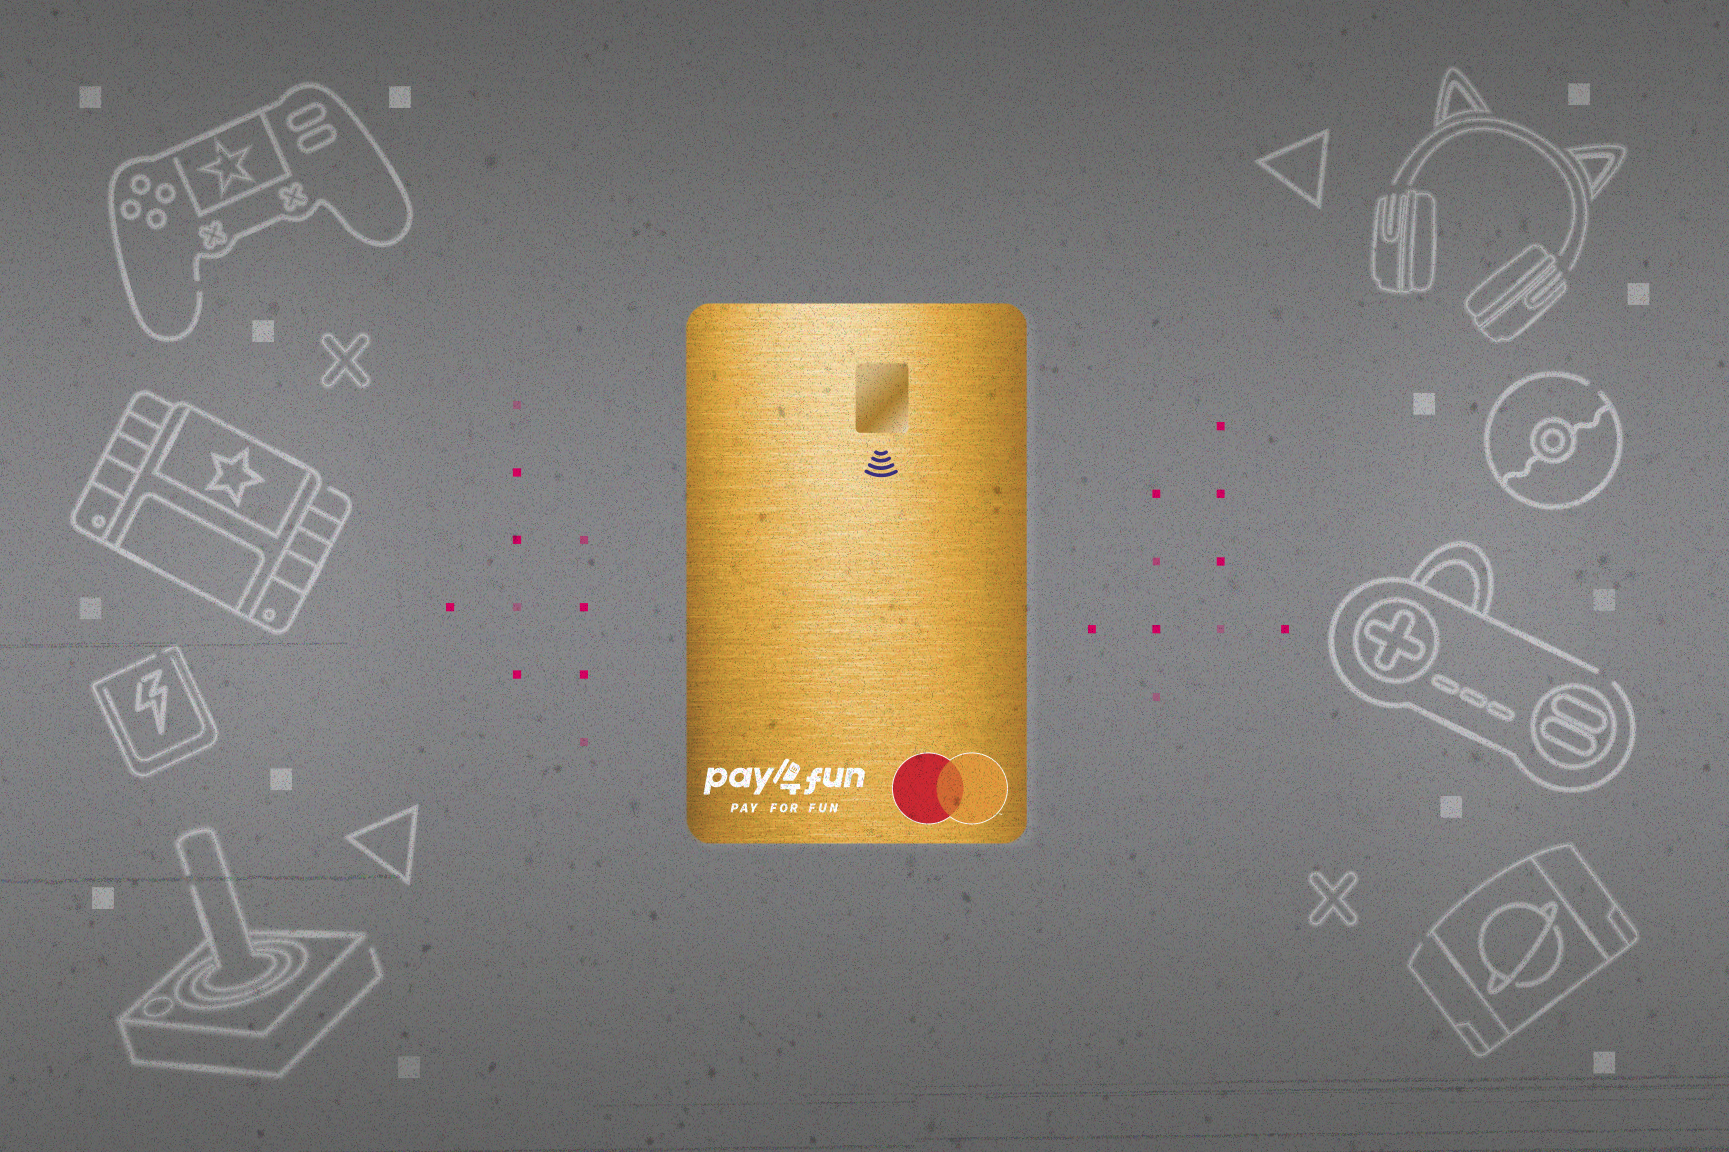 Cartão Pay4Fun powered by Pomelo